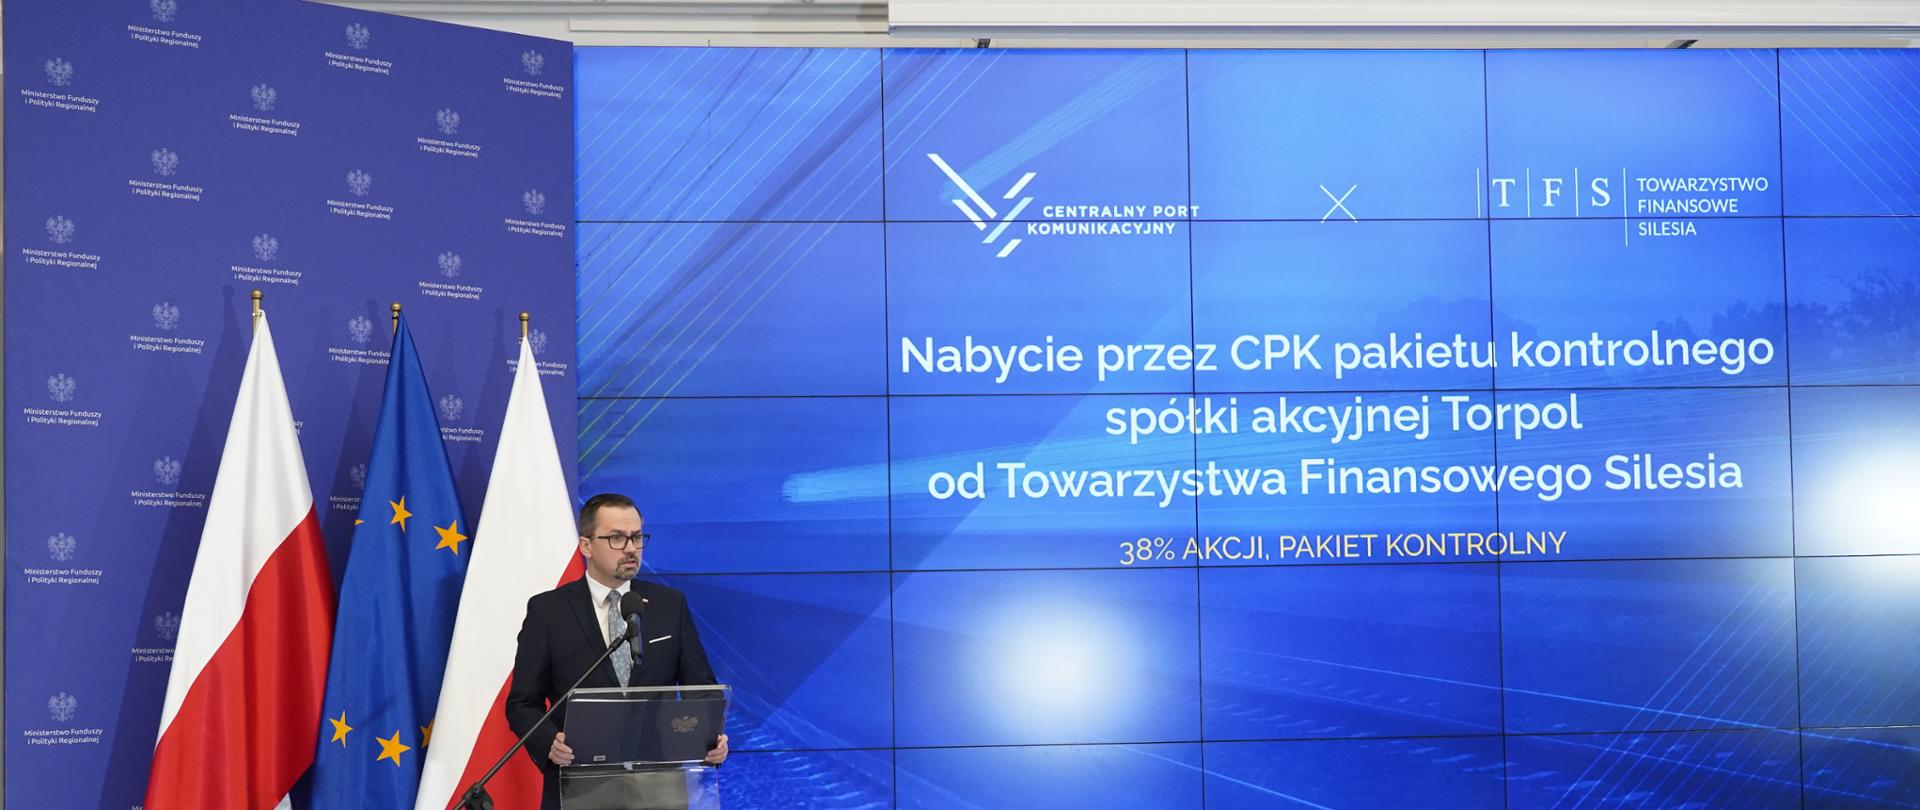 Wiceminister Marcin Horała stoi na scenie z lewej strony, przy pulpicie i mówi do mikrofonu.